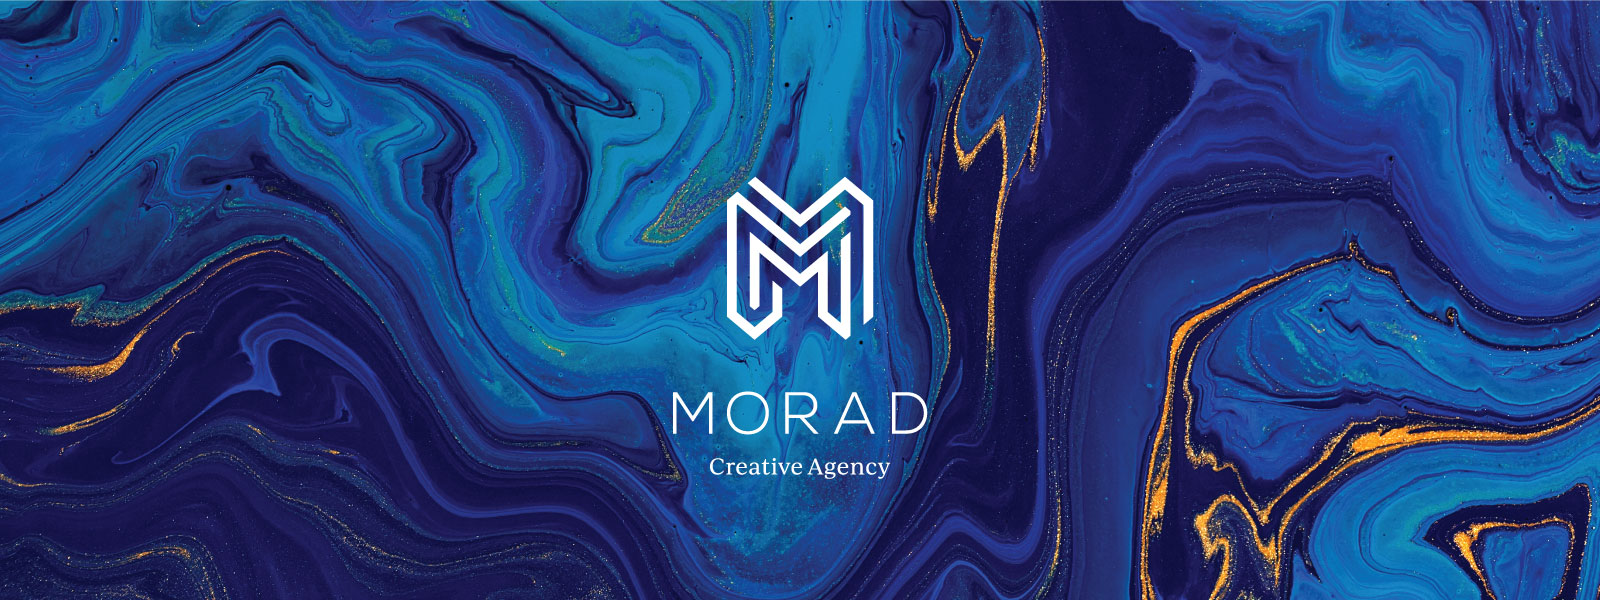 Calgary Creative Agency rebrands from Morad Media to Morad Creative Agency